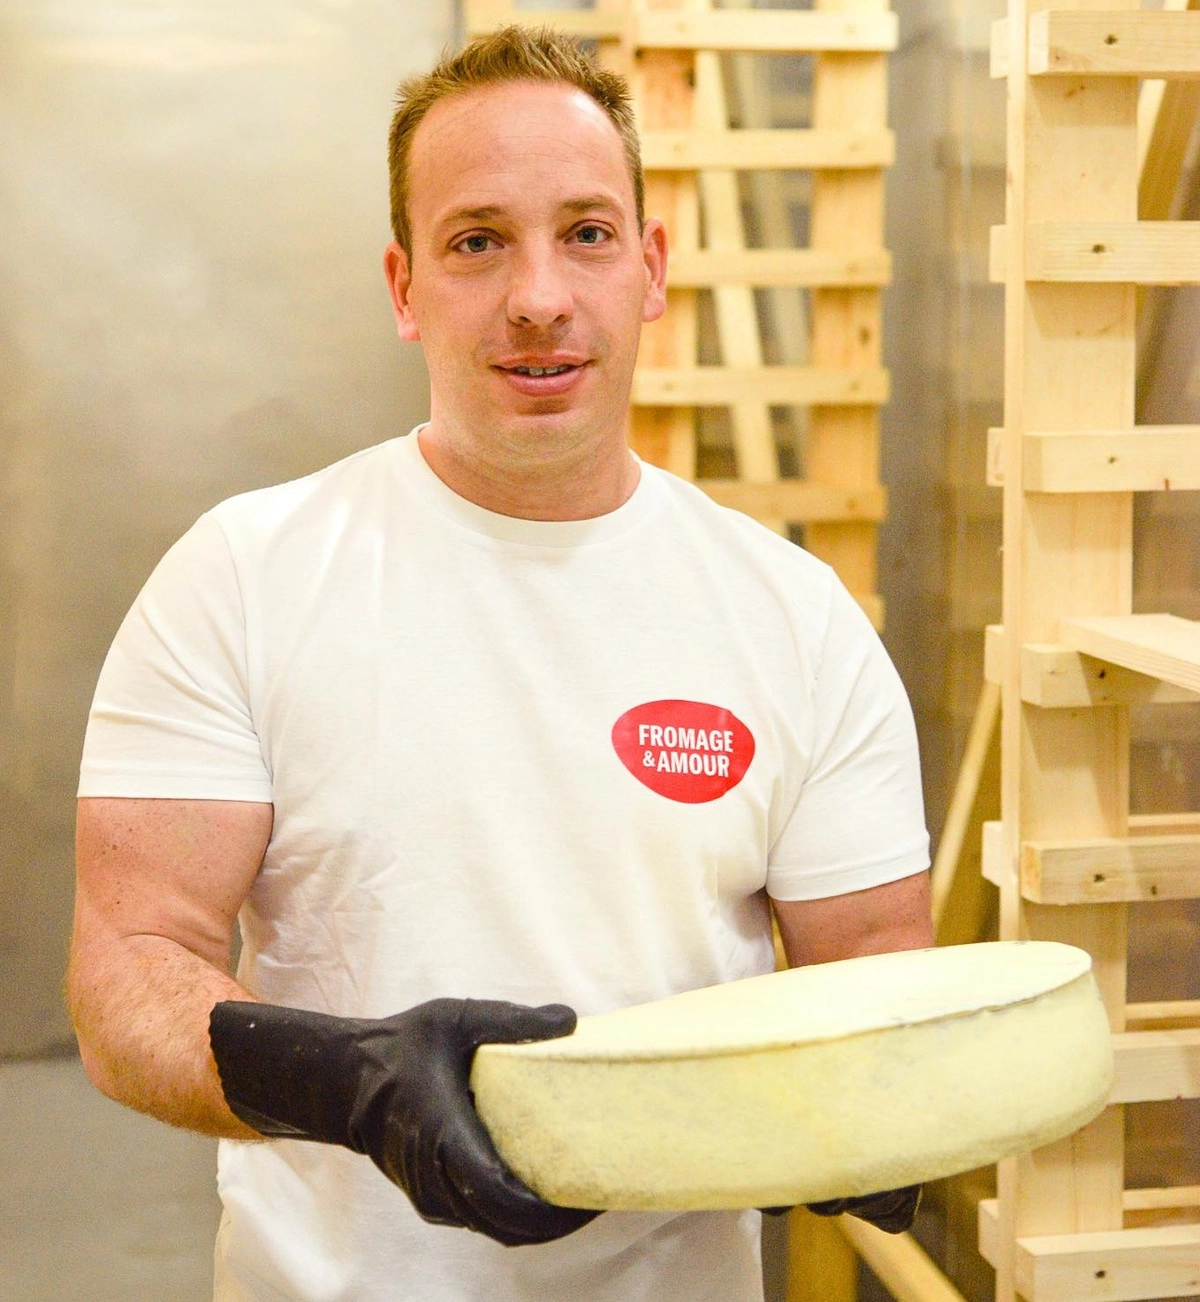 Главный технолог производства Fromage&Amour Филипп Орельен — потомственный сыровар в третьем поколении.